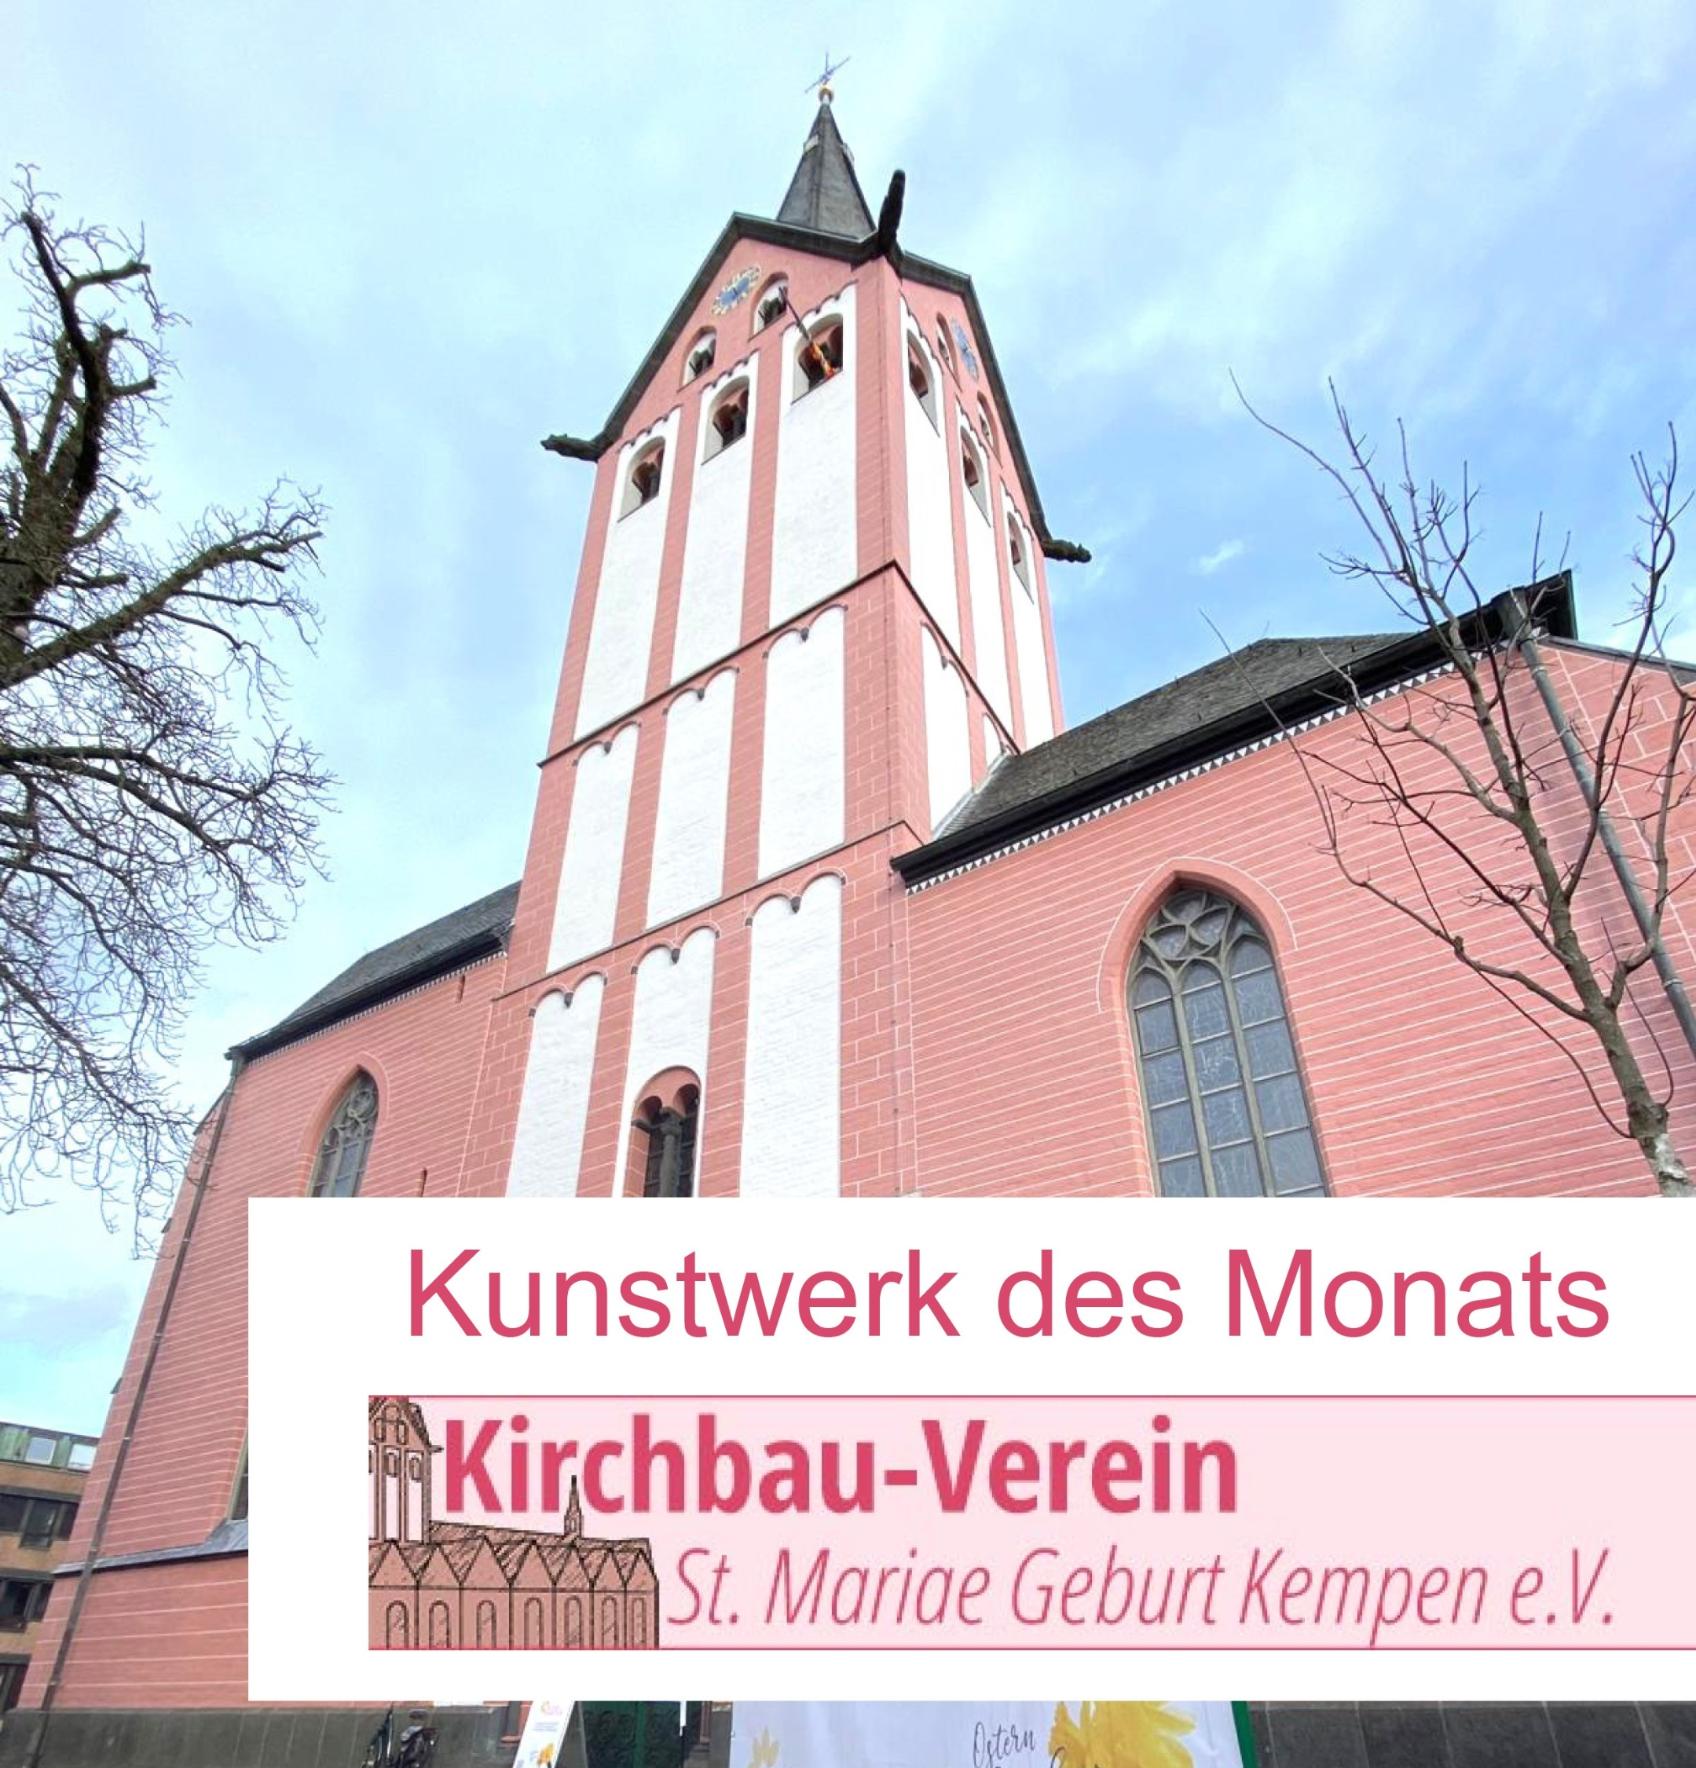 Kunstwerk des Monats (c) Kirchbau-Verein St. Mariae Geburt Kempen